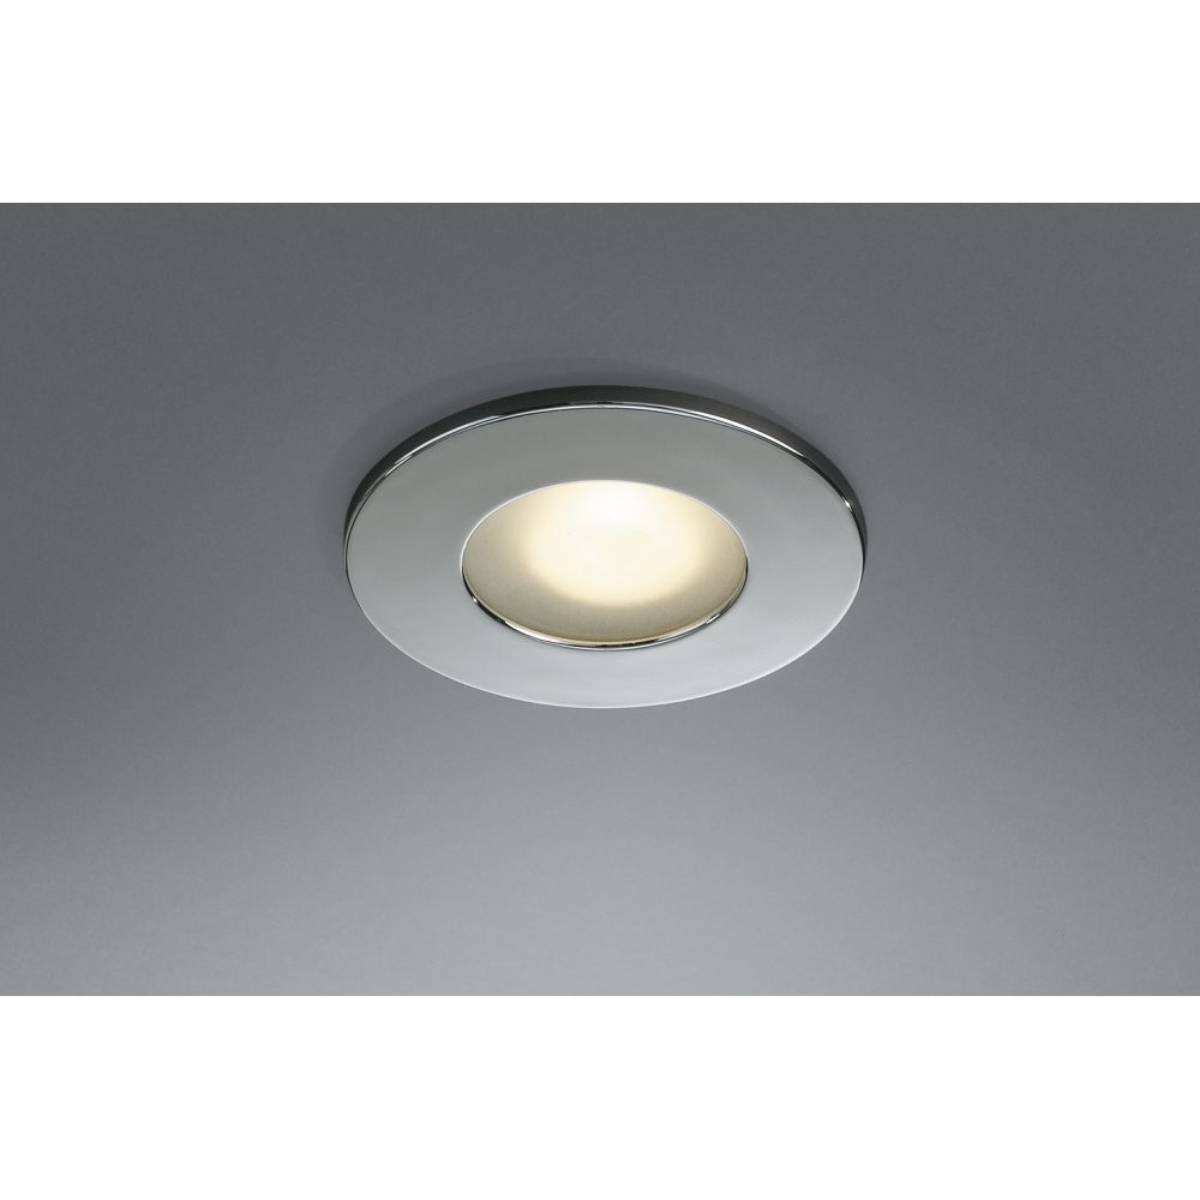 LED Satin Chrome Bathroom Ceiling Downlighter & Cool White Bulb (5233)